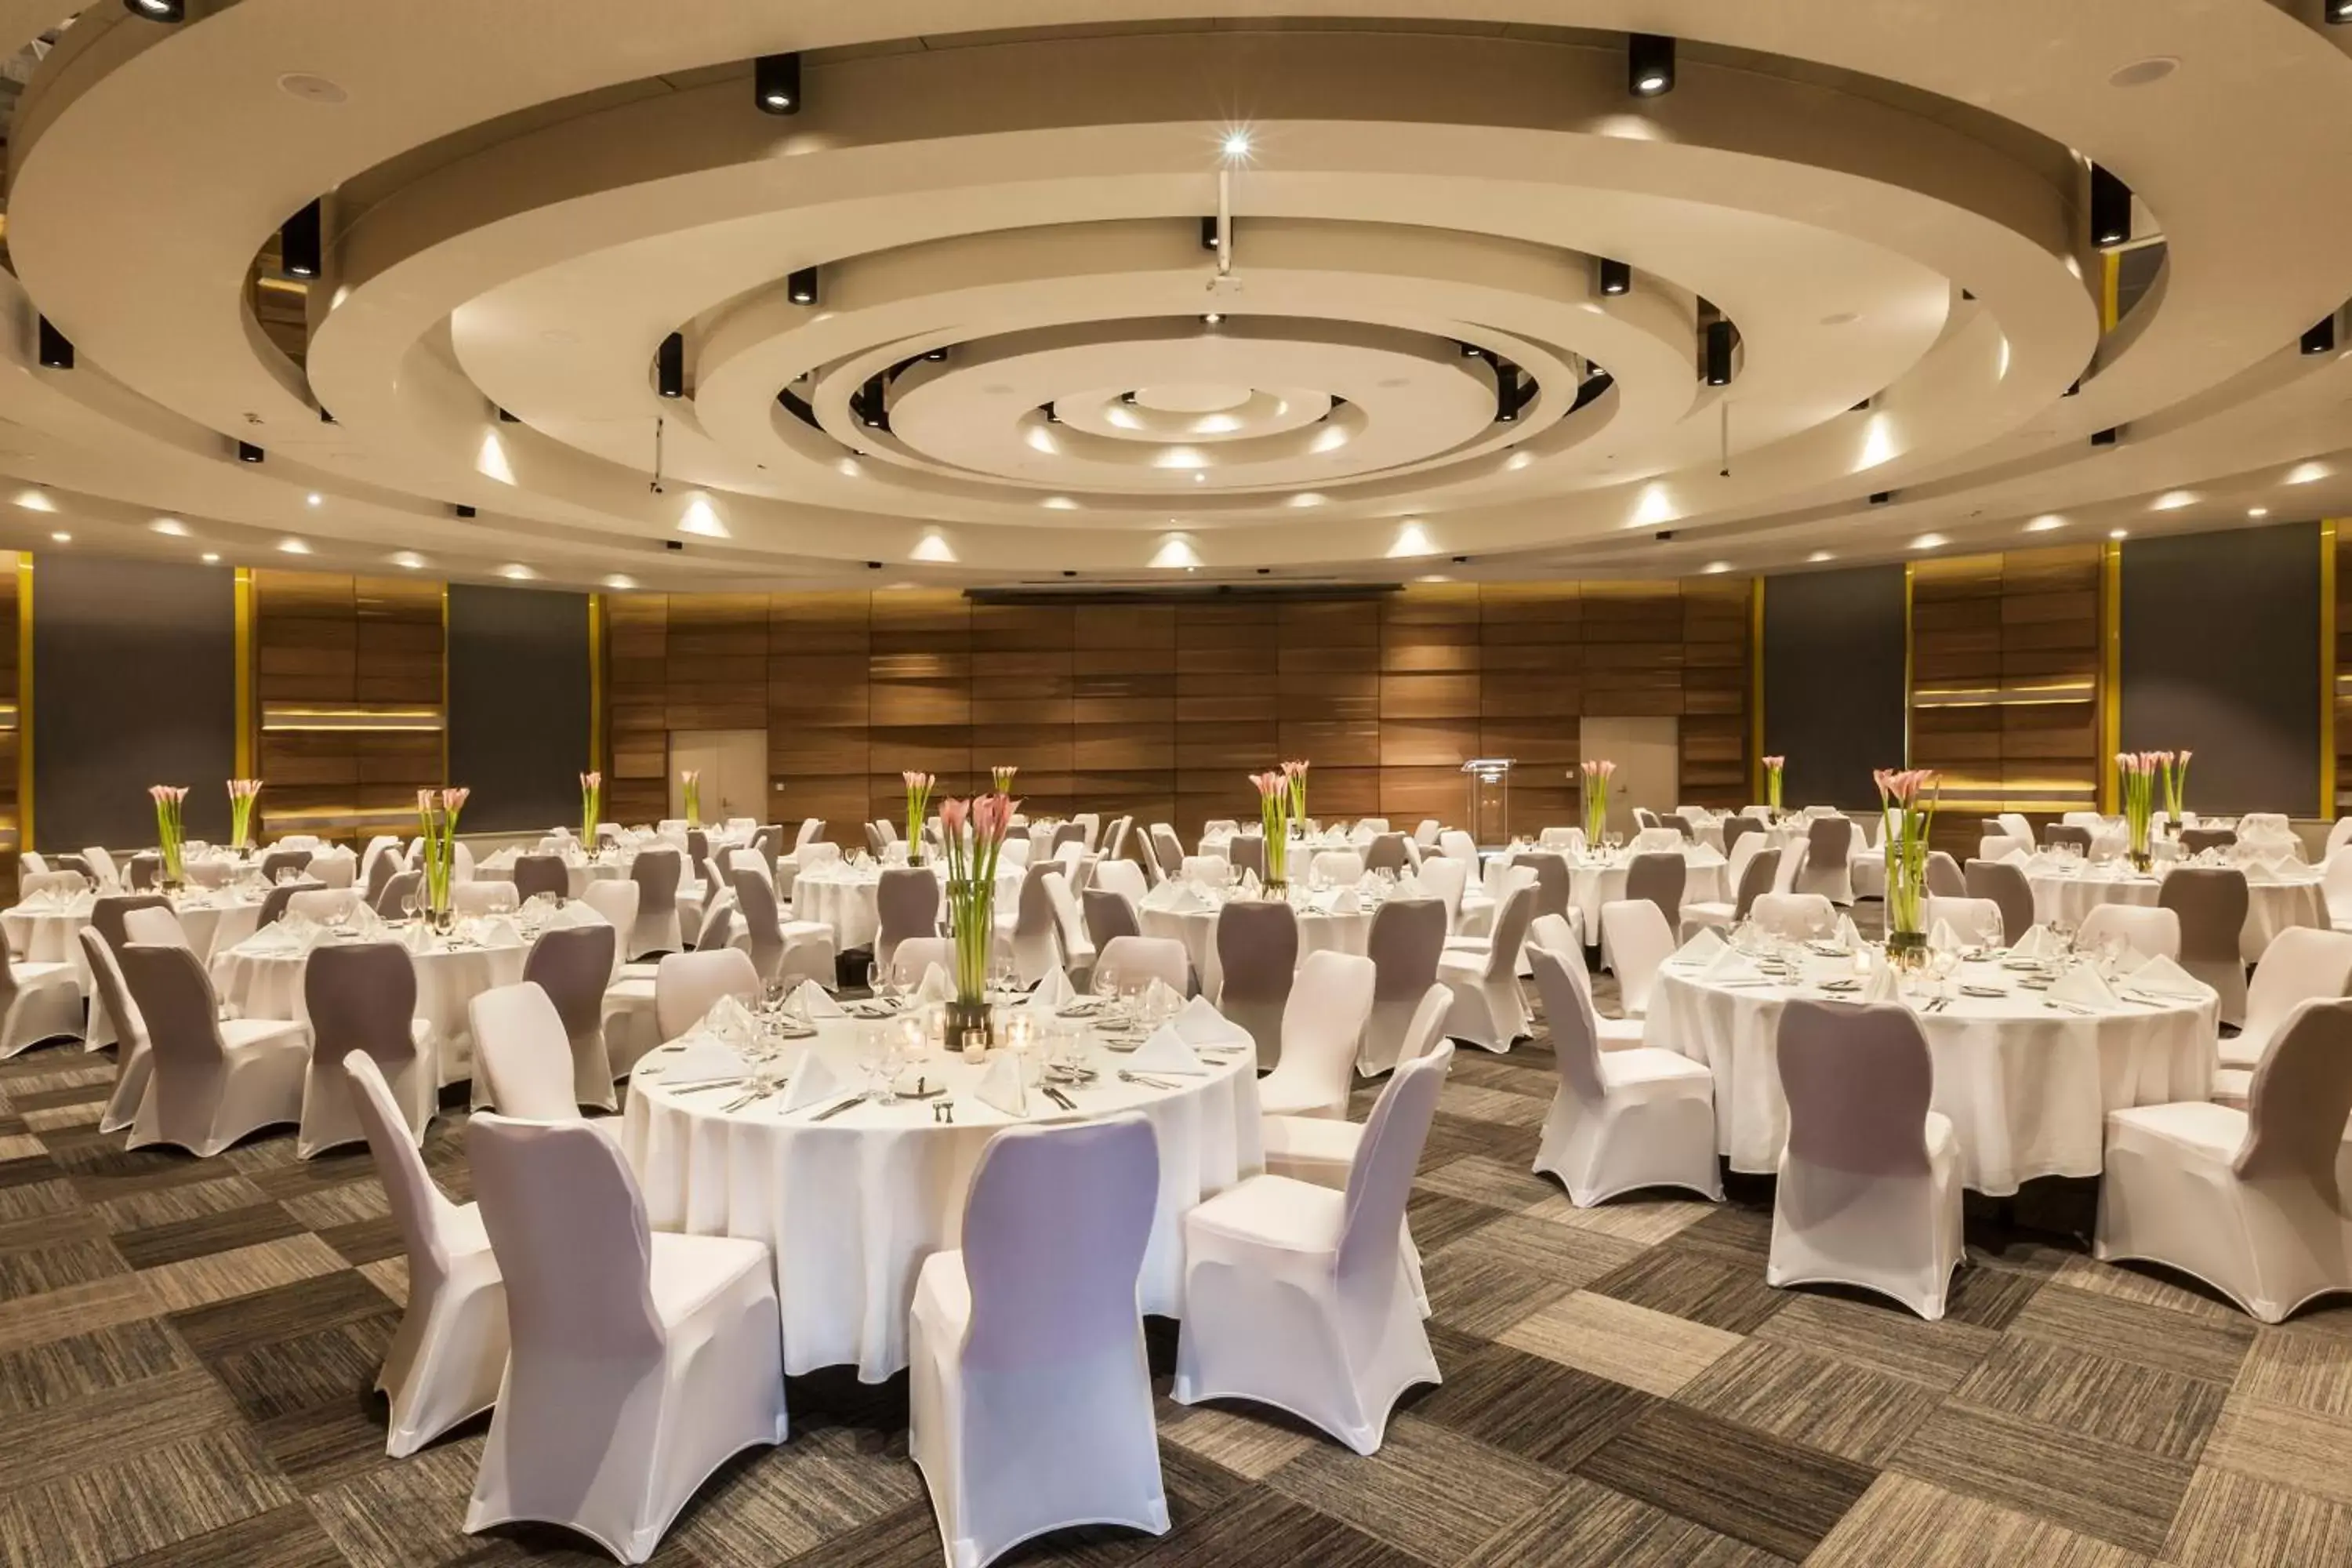 Banquet/Function facilities, Banquet Facilities in Danubius Hotel Helia